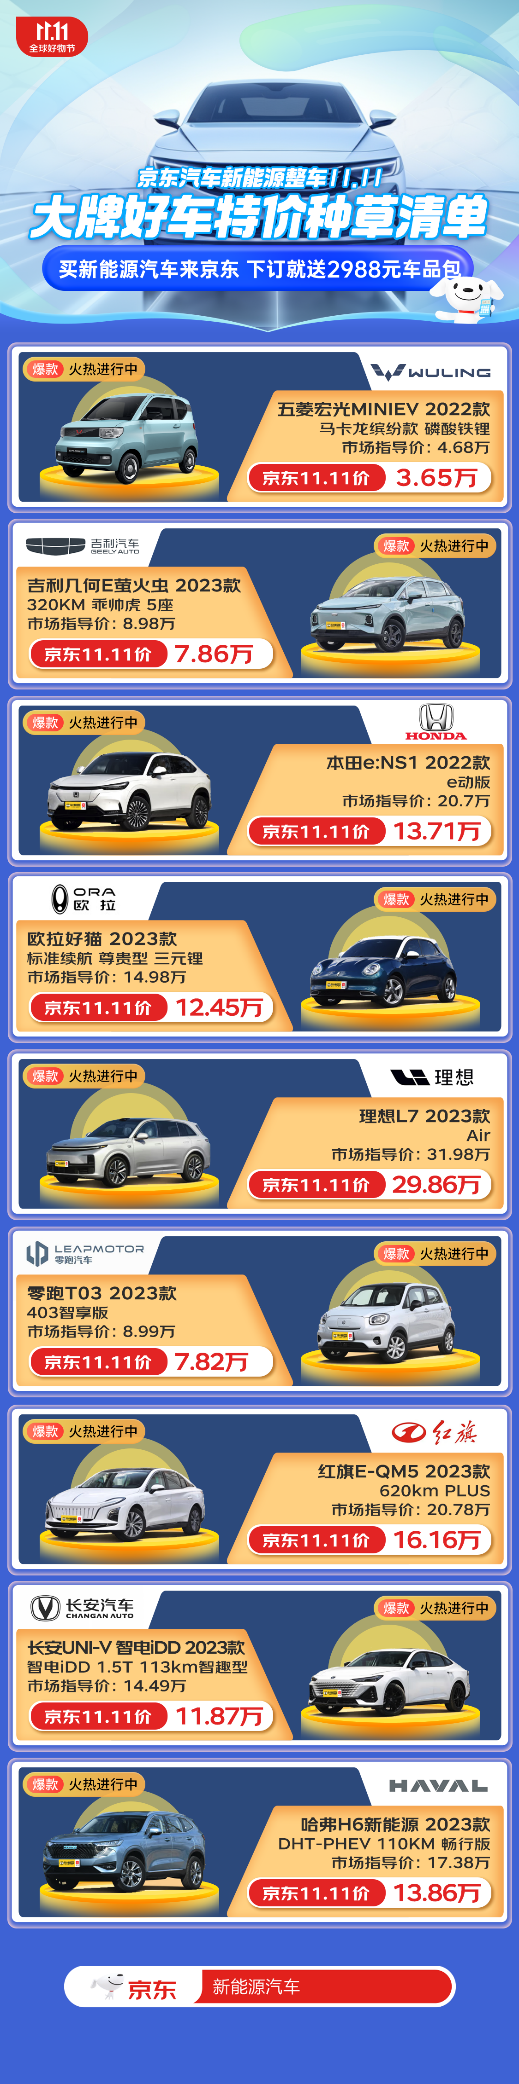 京东汽车11.11正式开启 下订新能源车即送2988元车品包  第2张